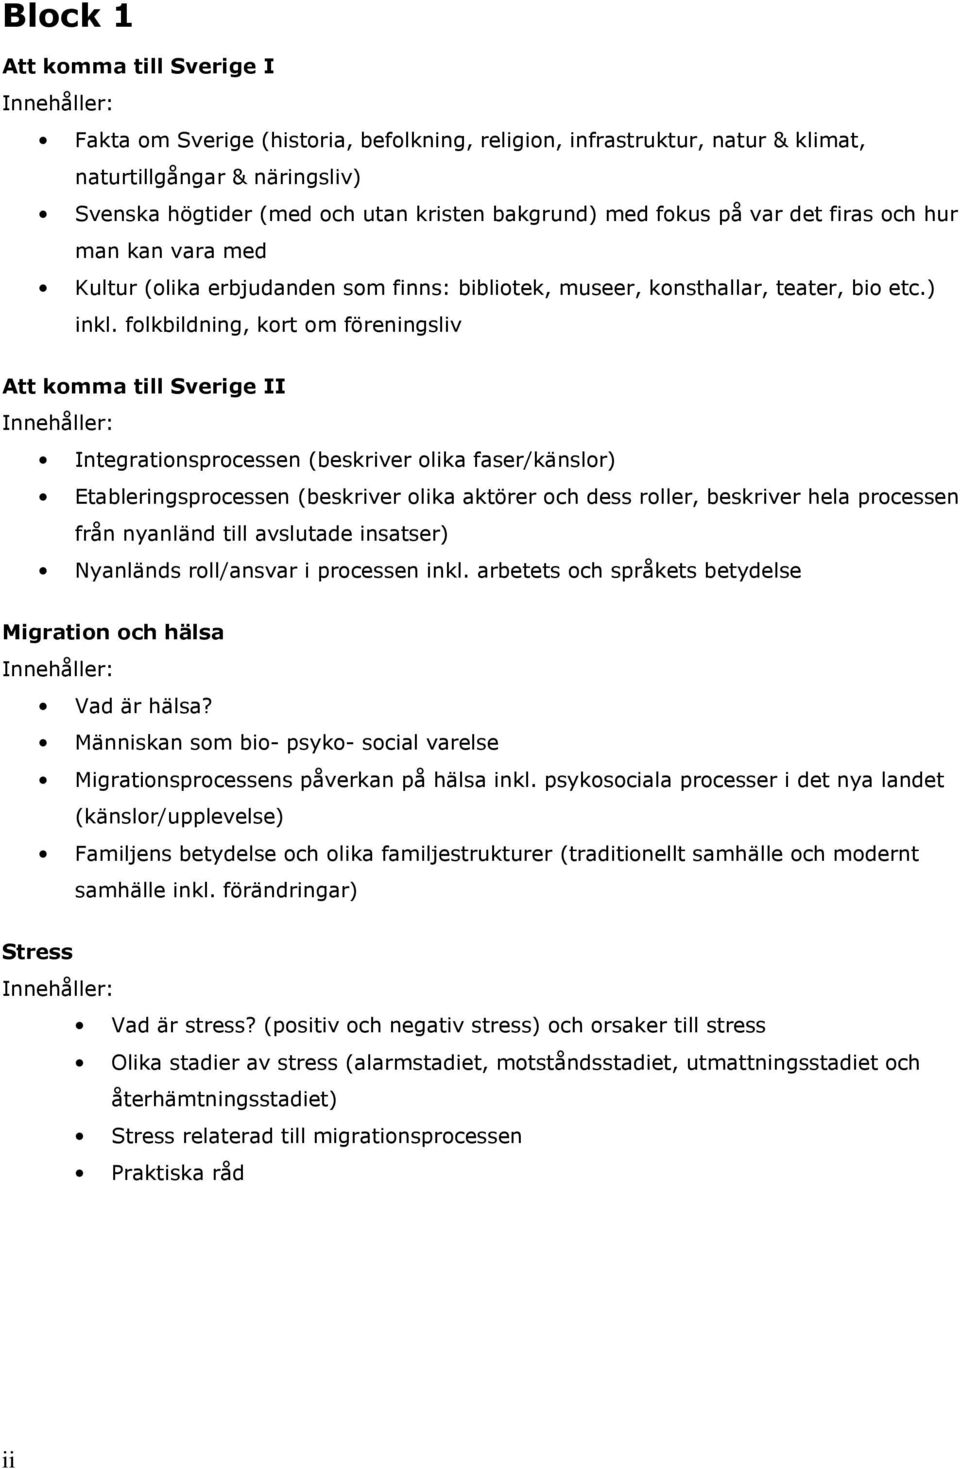 folkbildning, kort om föreningsliv Att komma till Sverige II Integrationsprocessen (beskriver olika faser/känslor) Etableringsprocessen (beskriver olika aktörer och dess roller, beskriver hela